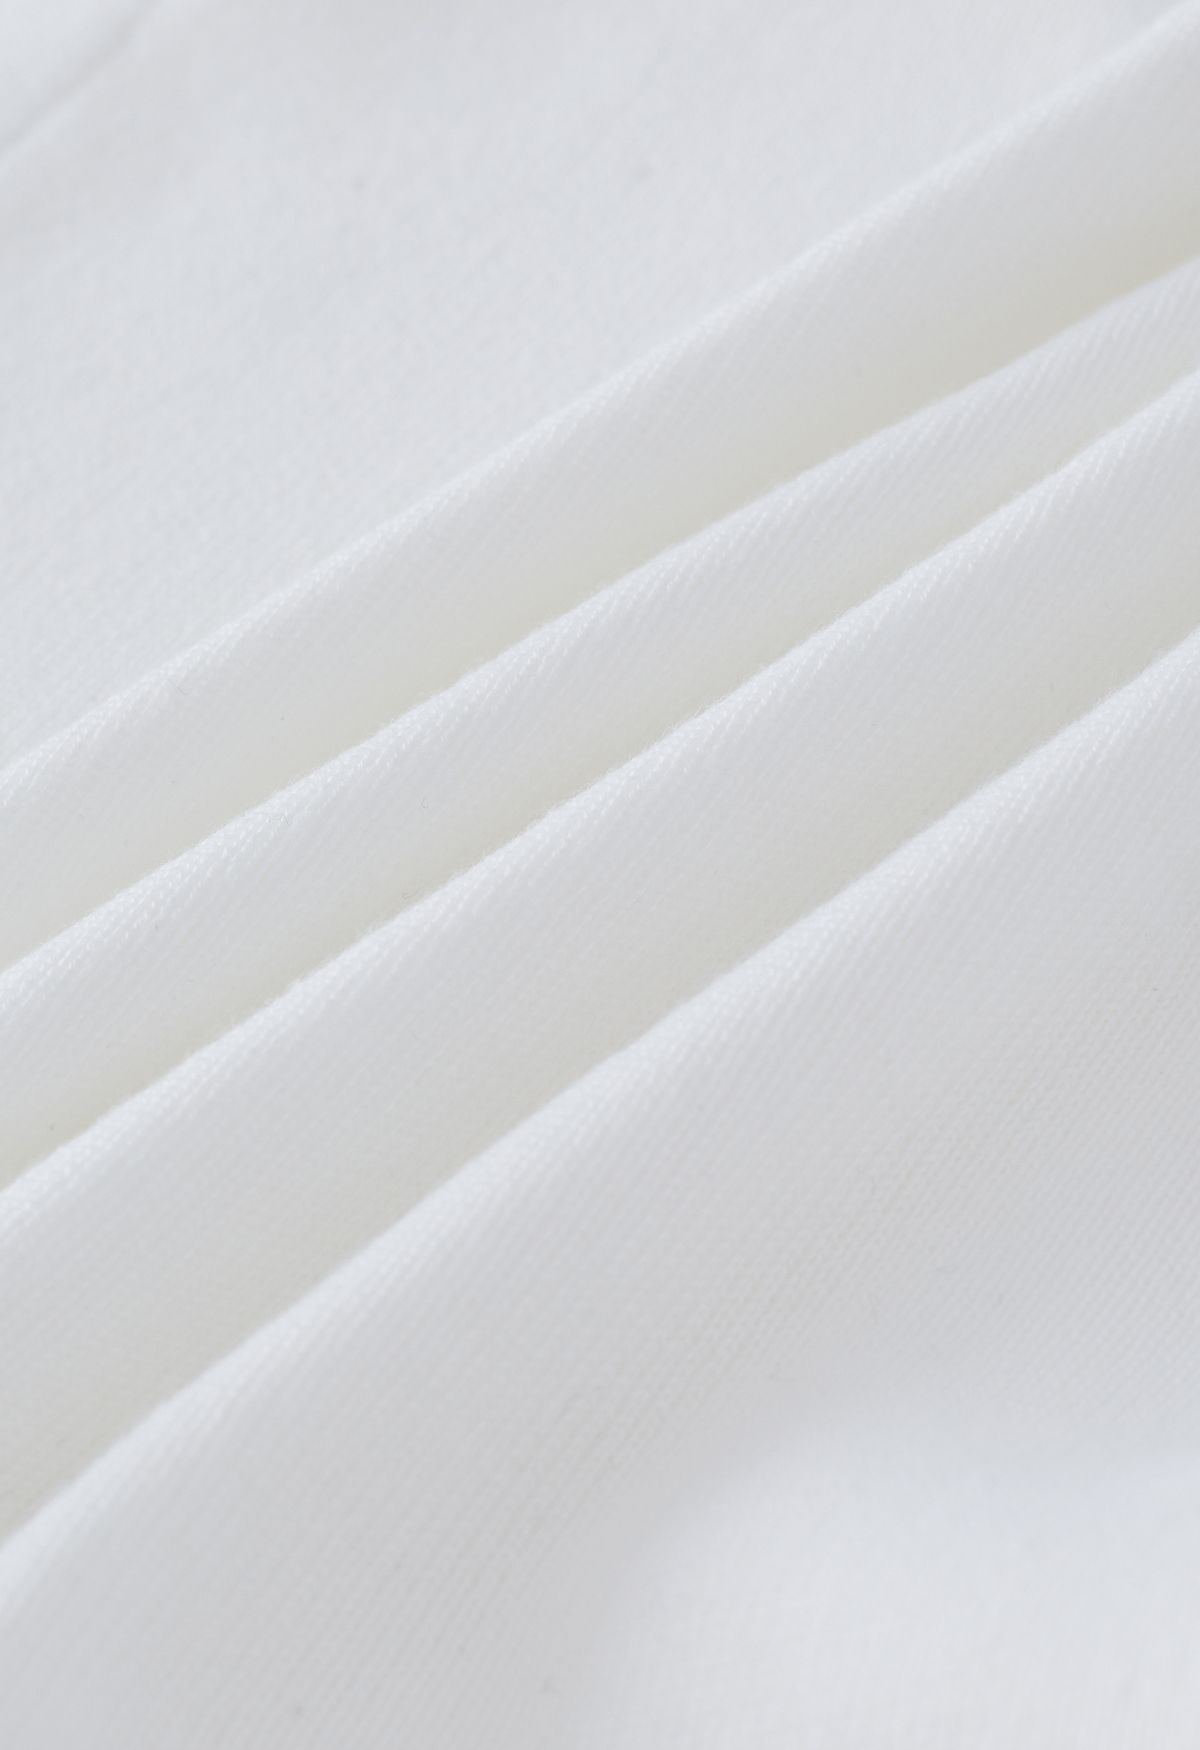 topo cortado de tricô com laço self-tie em branco